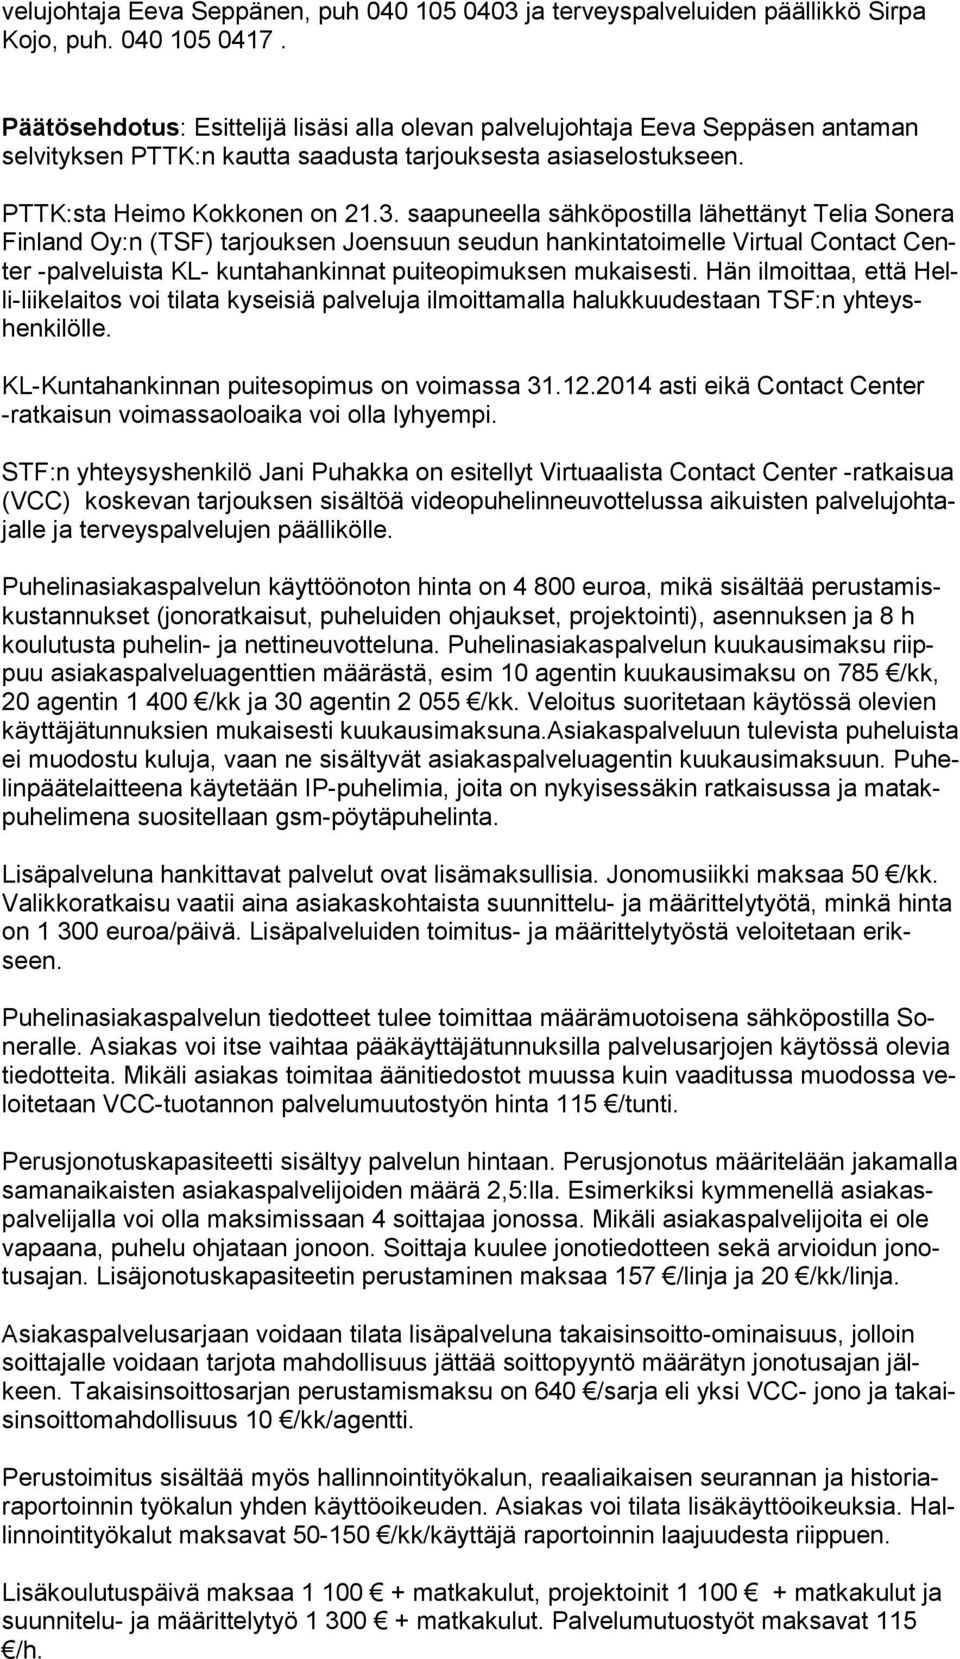 saapuneella sähköpostilla lähettänyt Telia Sonera Finland Oy:n (TSF) tarjouksen Joensuun seudun hankintatoimelle Virtual Contact Center -palveluista KL- kuntahankinnat puiteopimuksen mukaisesti.